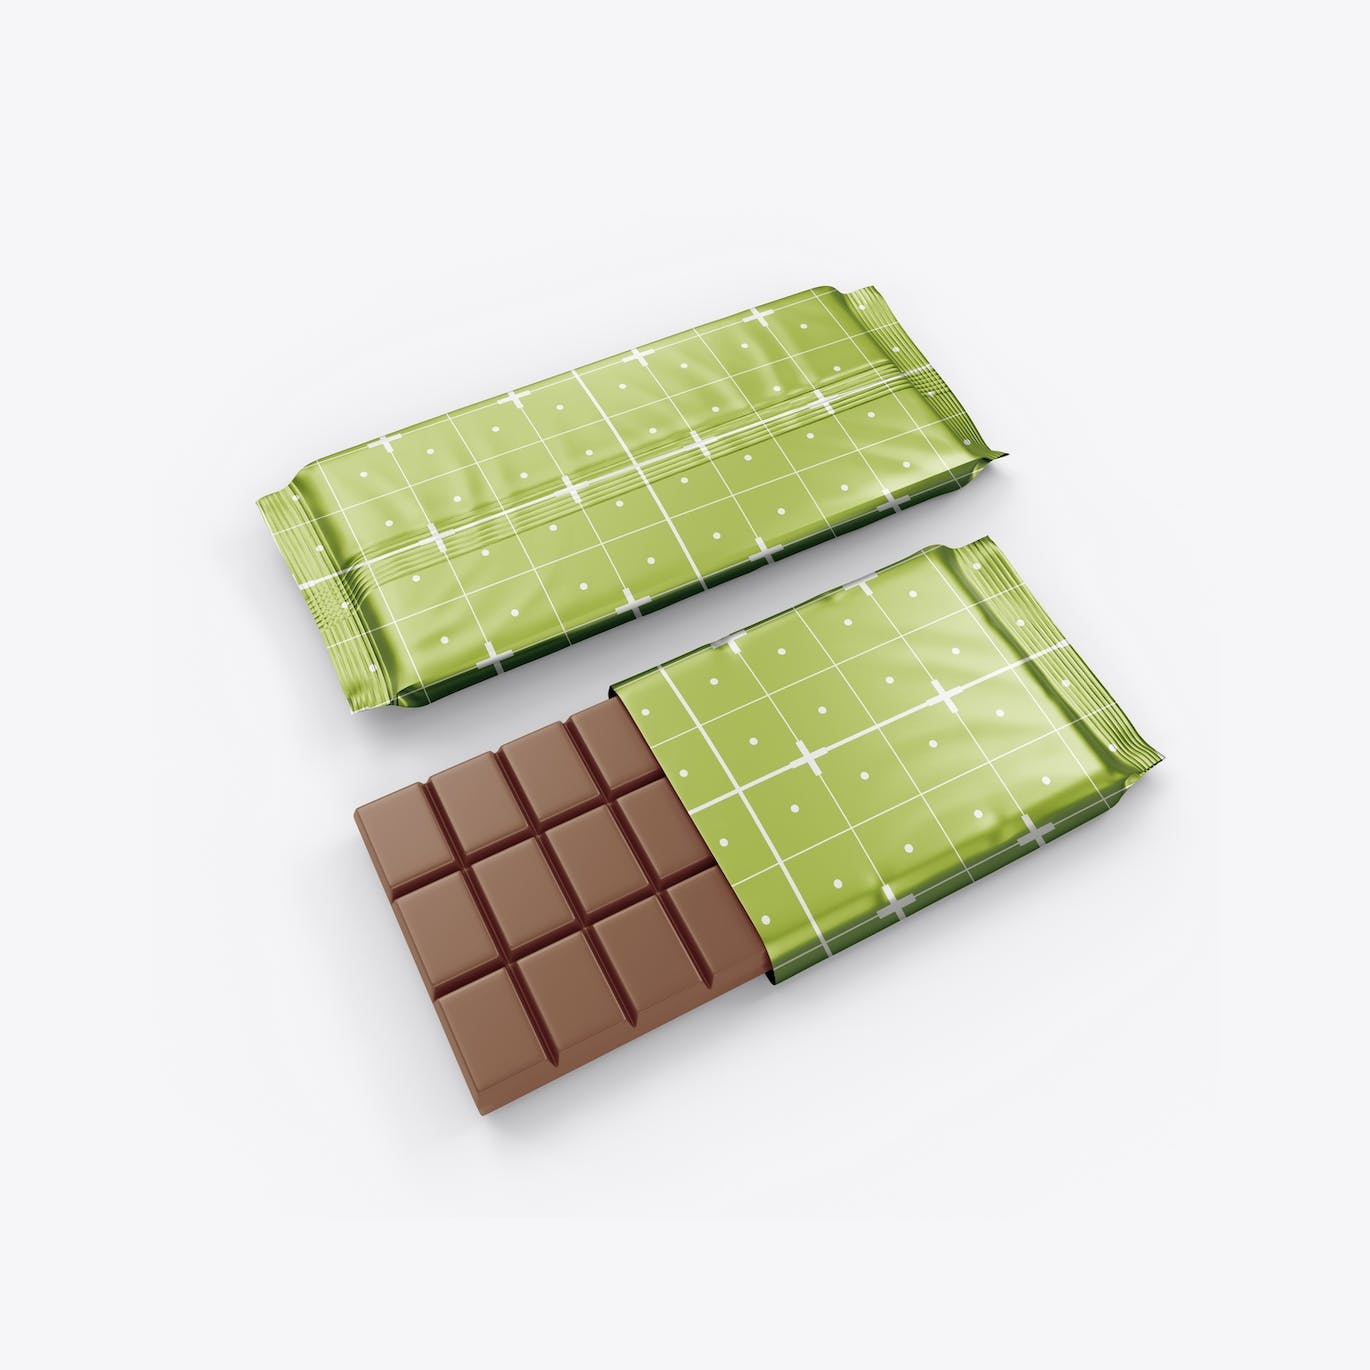 光亮的巧克力棒设计包装样机图 Set Glossy Chocolate Bar Mockup 样机素材 第7张